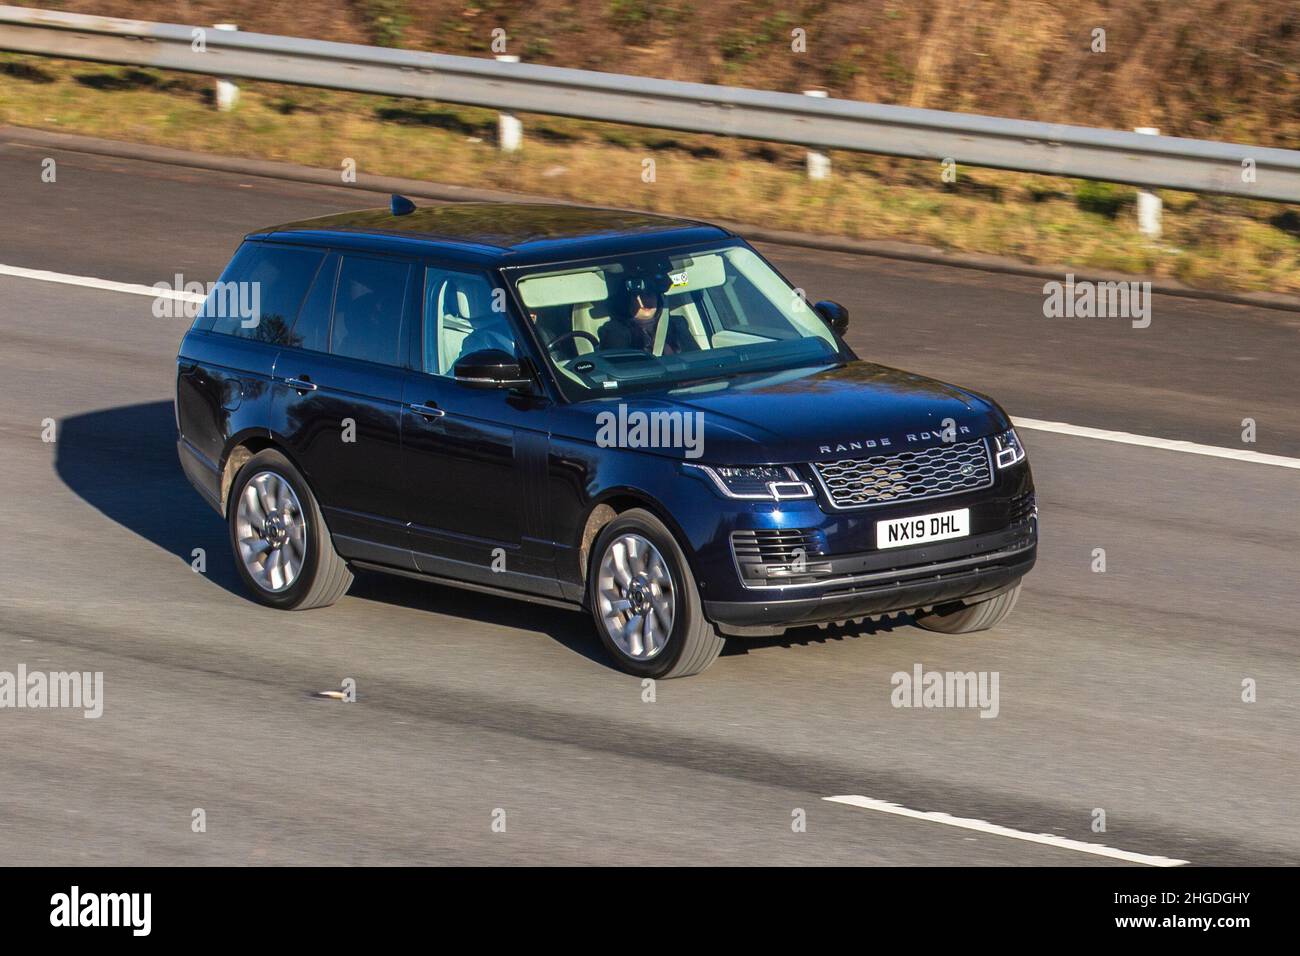 2019 bleu Land Rover, Range Rover Vogue 1997cc hybride électrique automatique à 8 vitesses.Circulation automobile, véhicules en mouvement, voitures, conduite de véhicules sur les routes du Royaume-Uni, moteurs, conduite sur l'autoroute M61 du réseau routier britannique. Banque D'Images